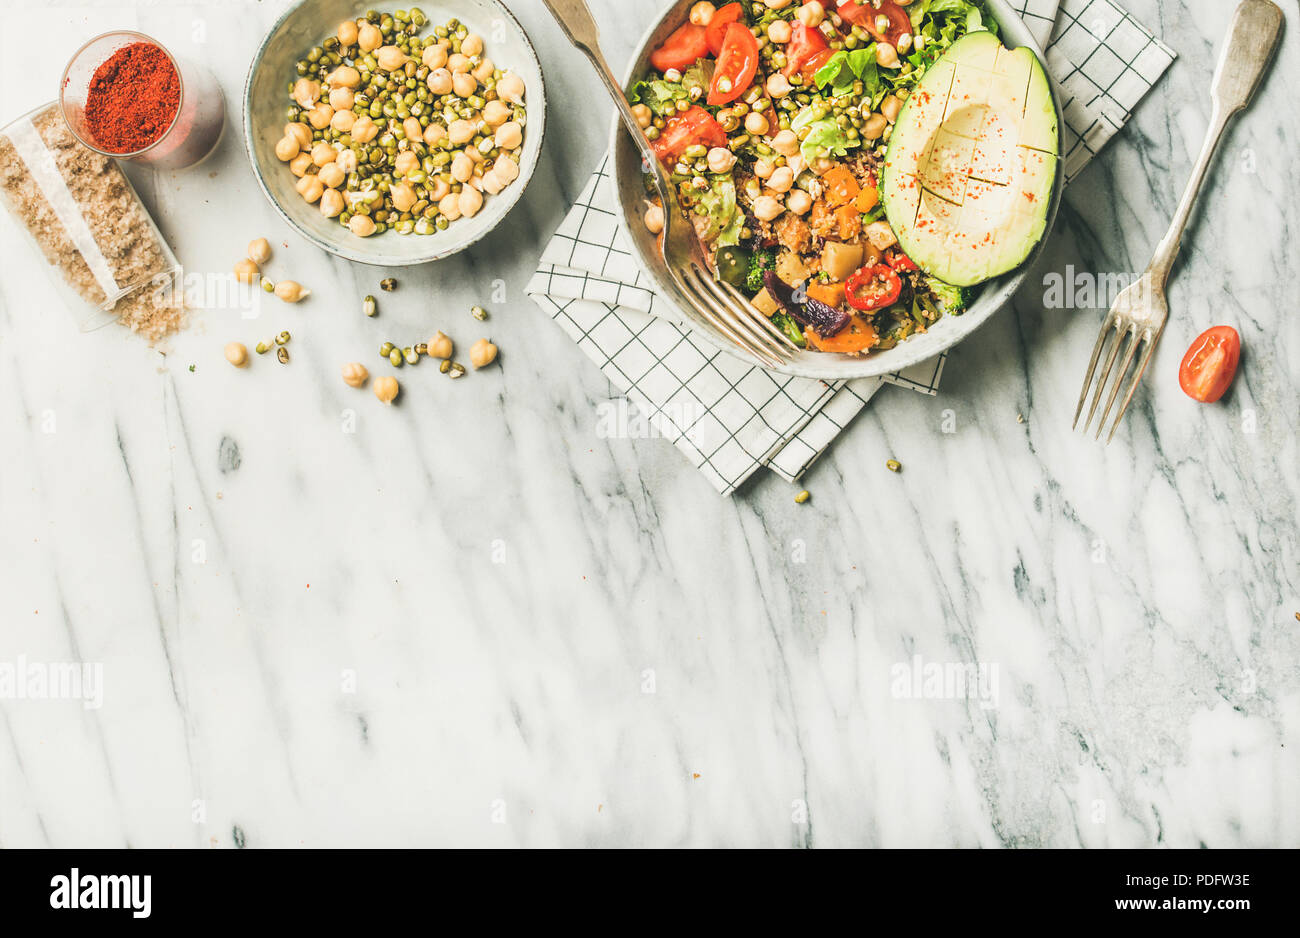 Cena vegana ciotola con avocado, cereali, fagioli e verdure, spazio di copia Foto Stock